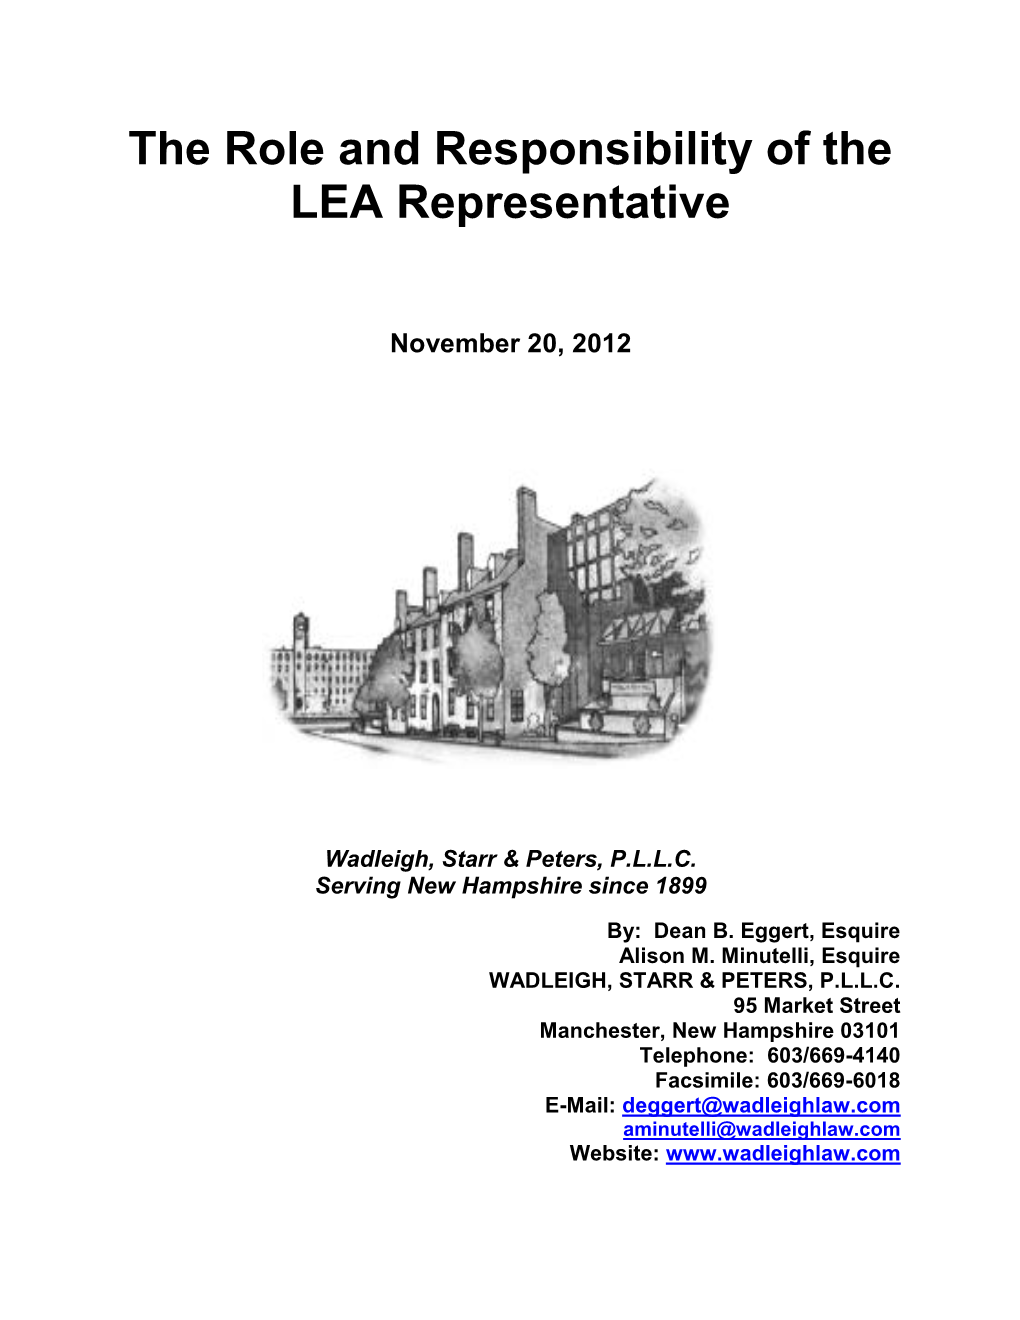 LEA-Representative-T